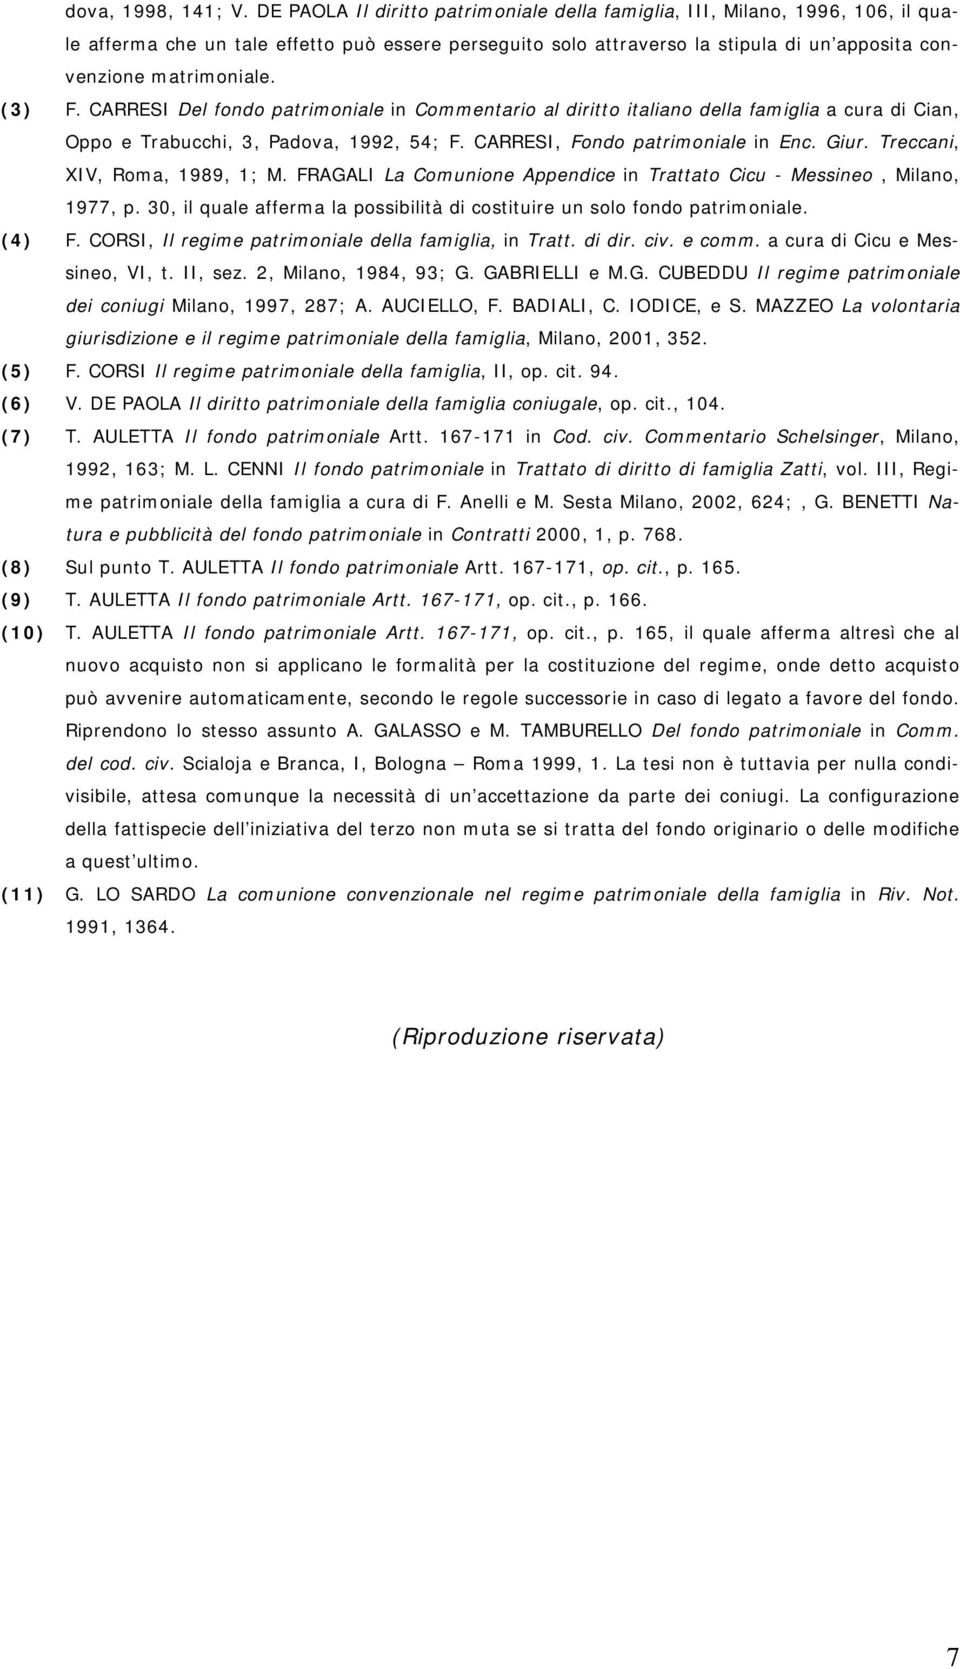 (3) F. CARRESI Del fondo patrimoniale in Commentario al diritto italiano della famiglia a cura di Cian, Oppo e Trabucchi, 3, Padova, 1992, 54; F. CARRESI, Fondo patrimoniale in Enc. Giur.